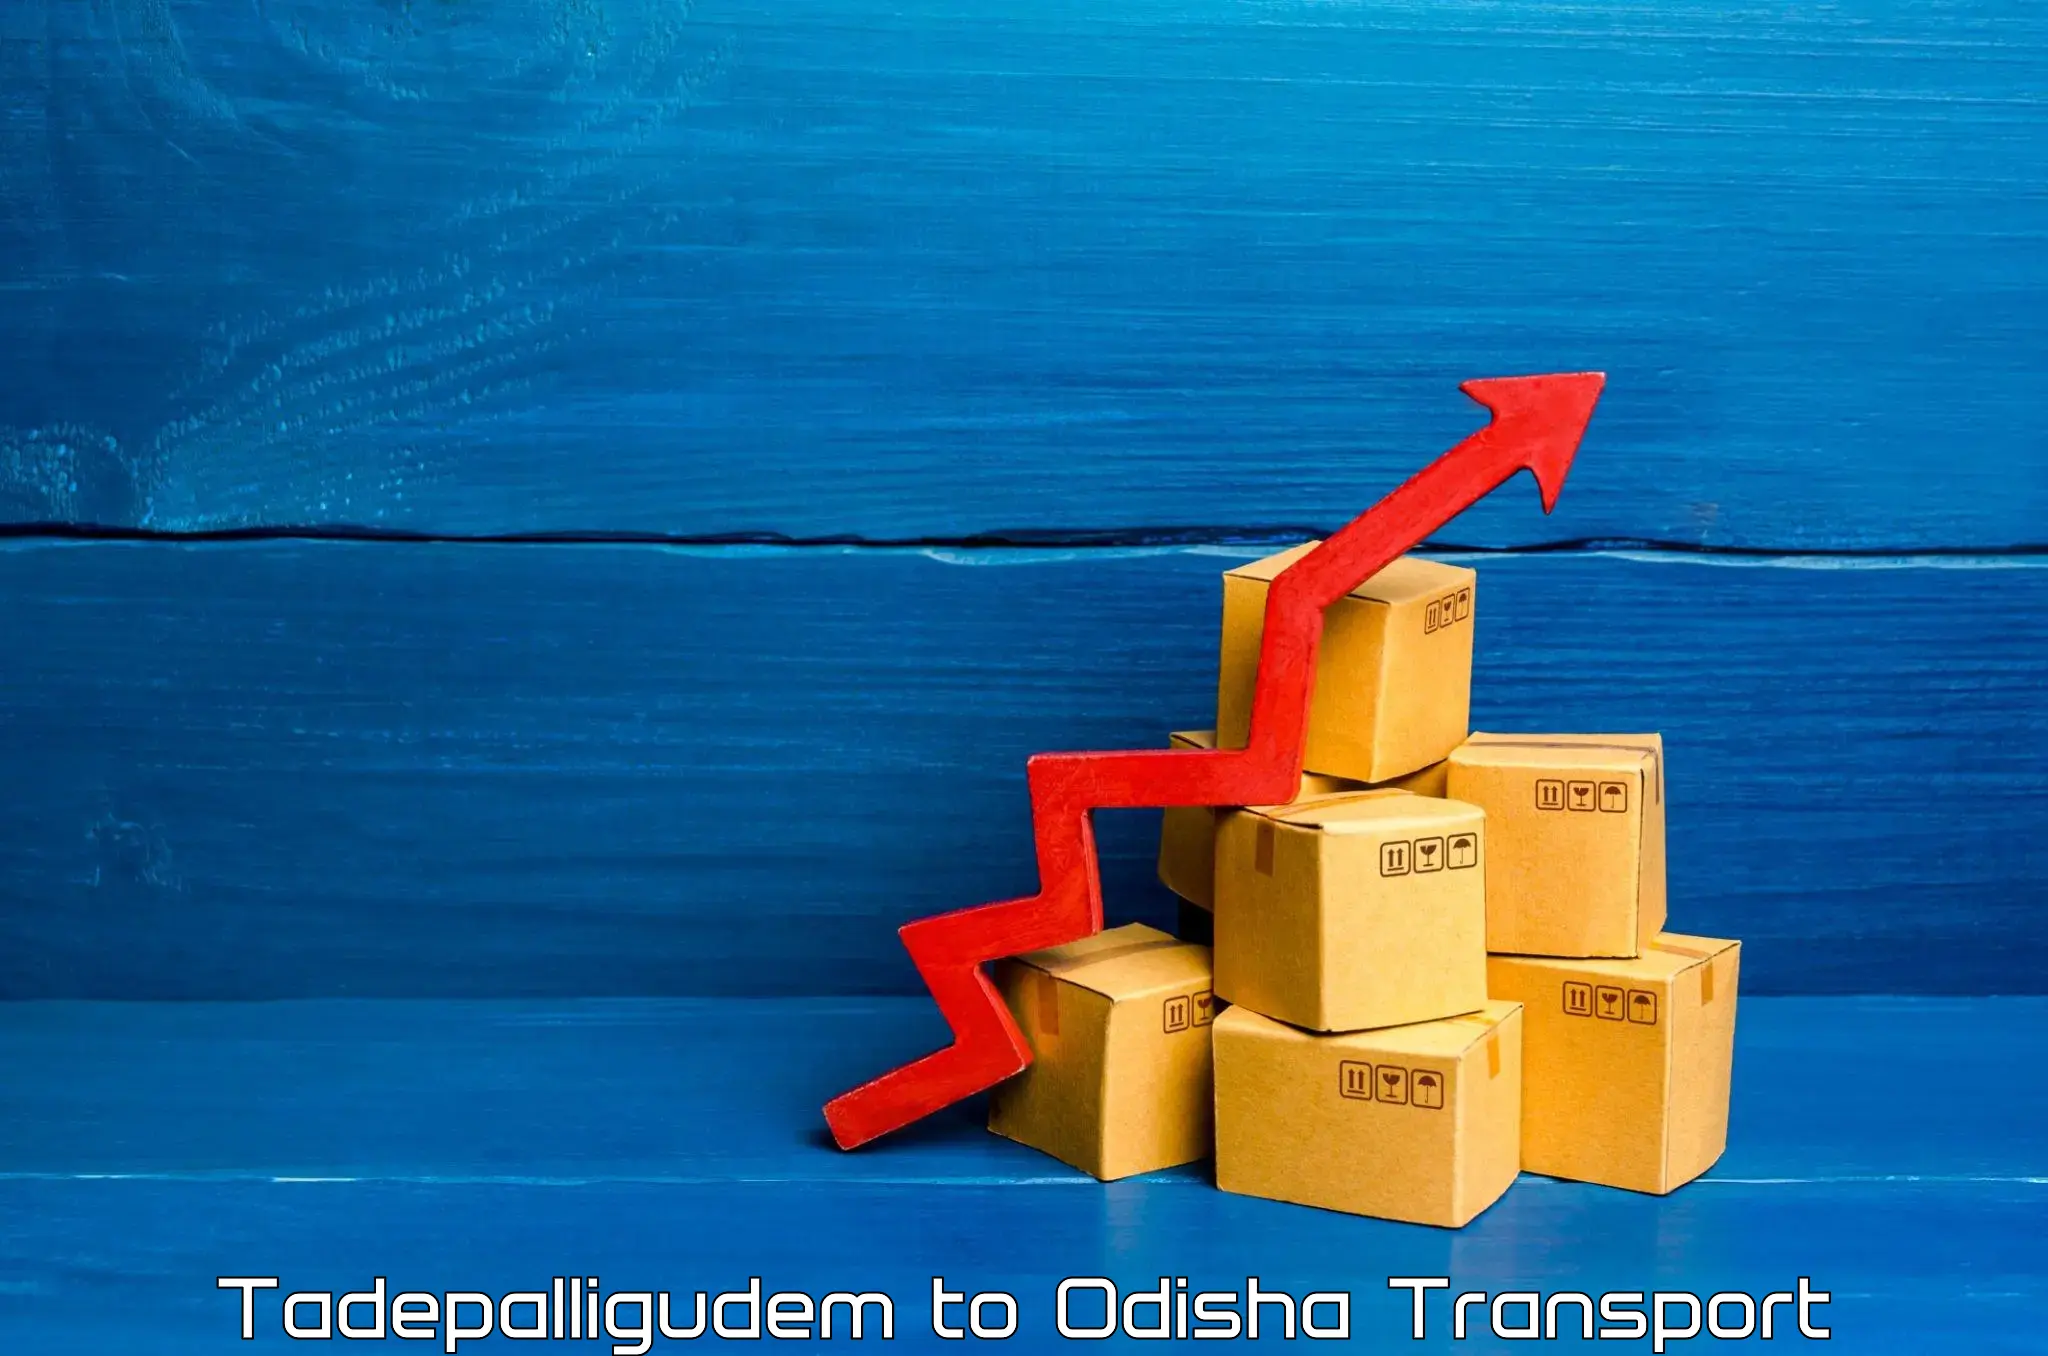 Furniture transport service Tadepalligudem to Odisha